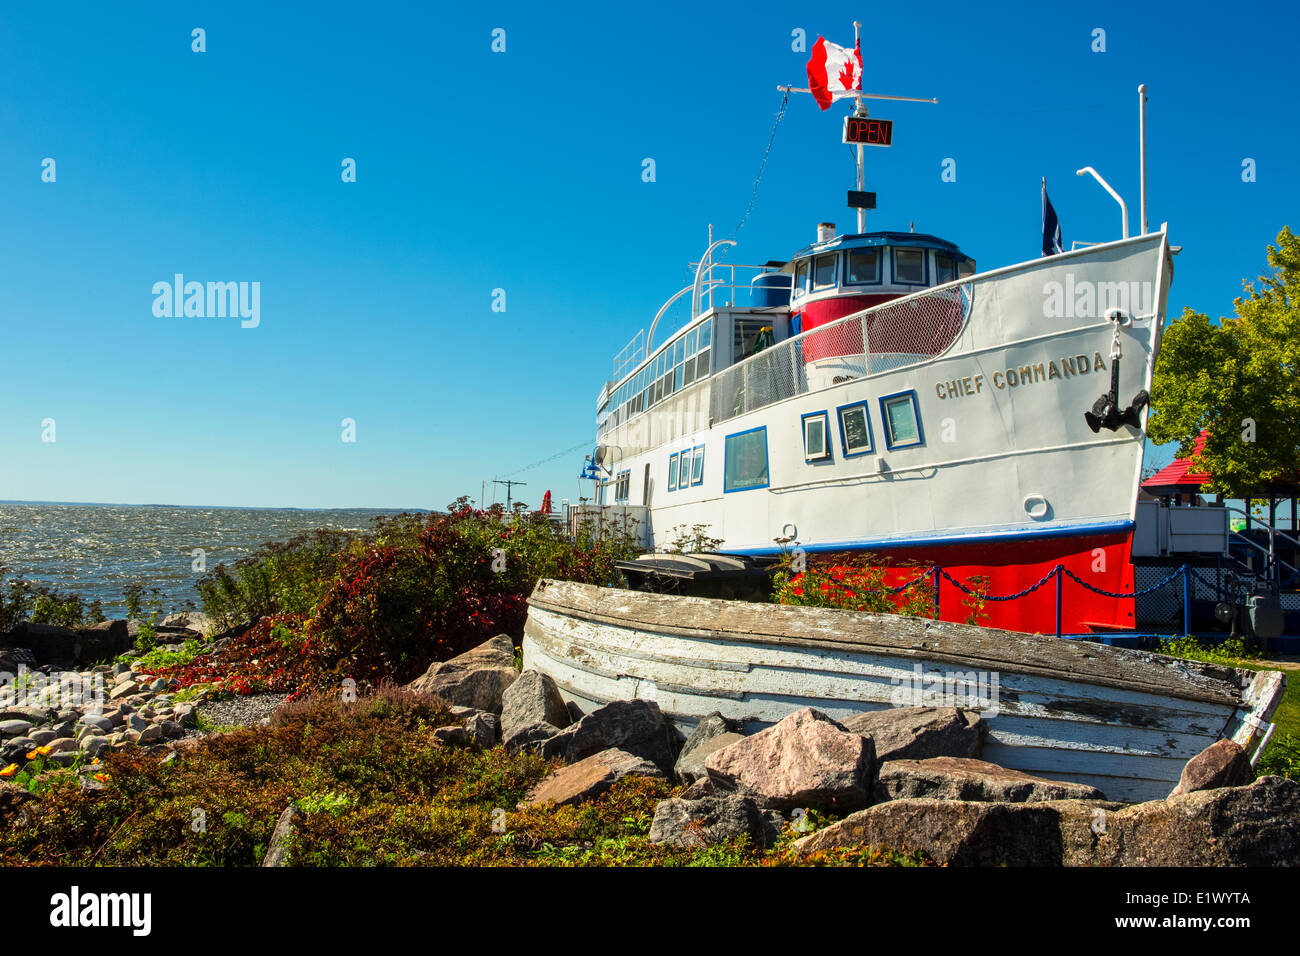 Ausflugsschiff, Chief Commanda, North Bay Waterfront, Ontario, Kanada Stockfoto